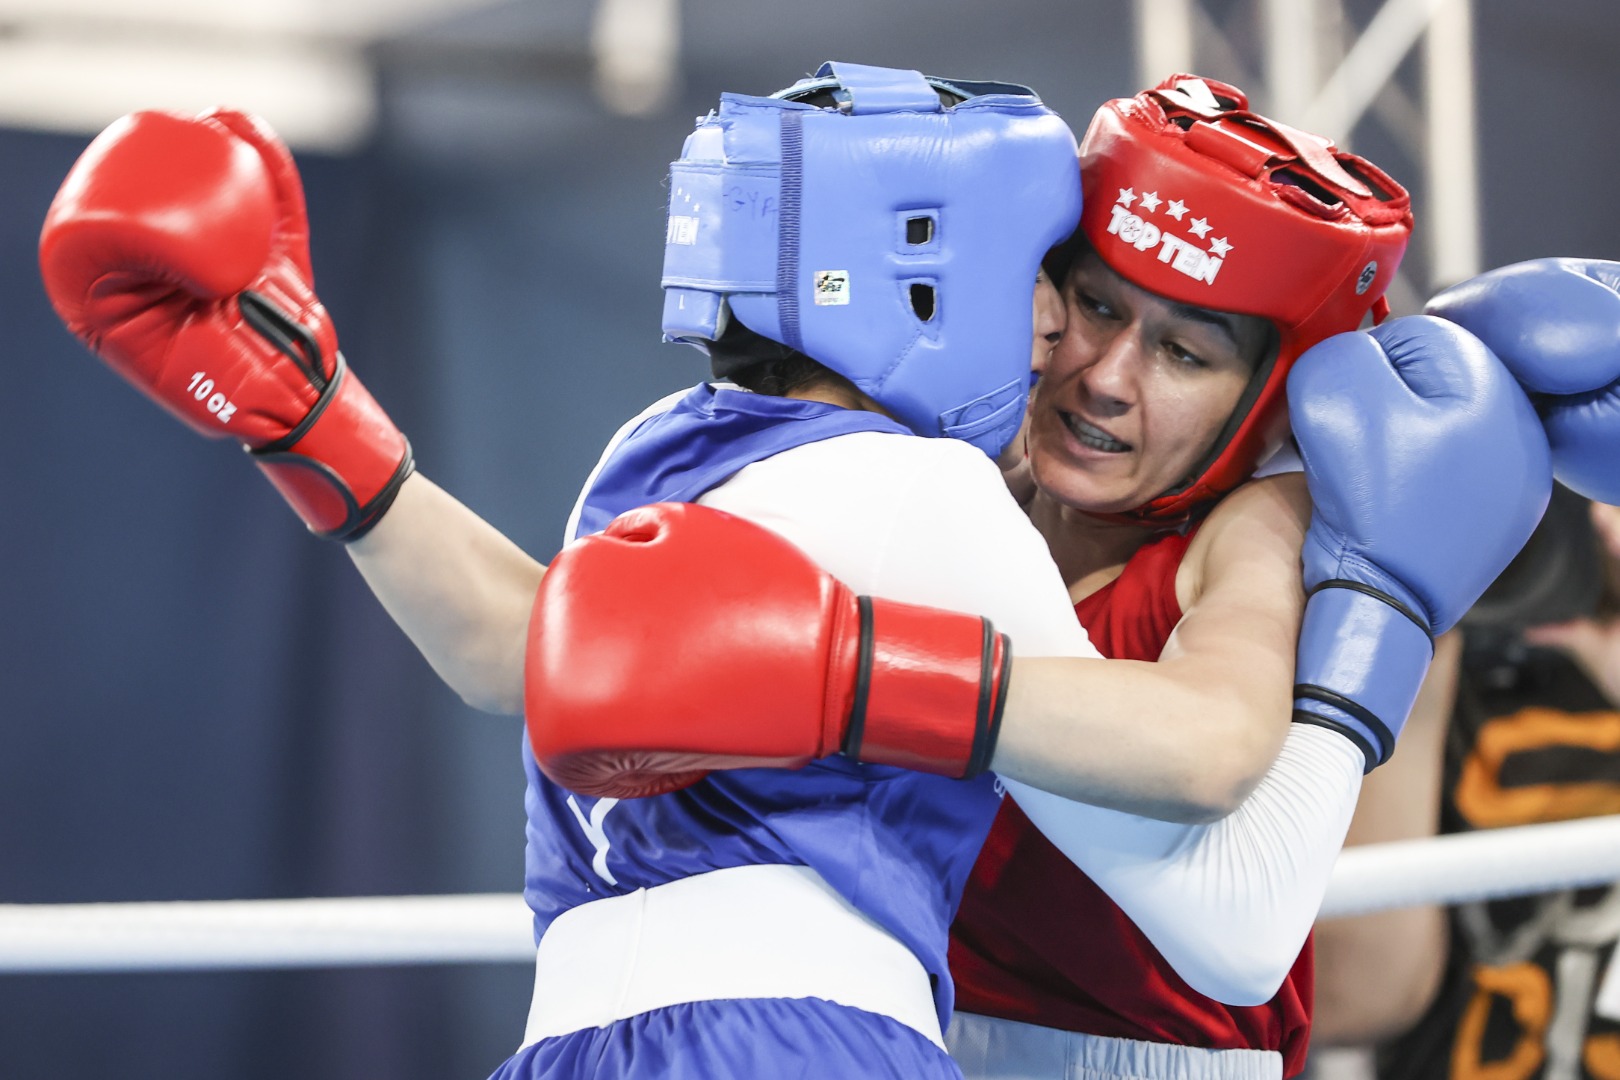 Milli boksör Hatice Akbaş Mısırlı rakibini devirdi 5